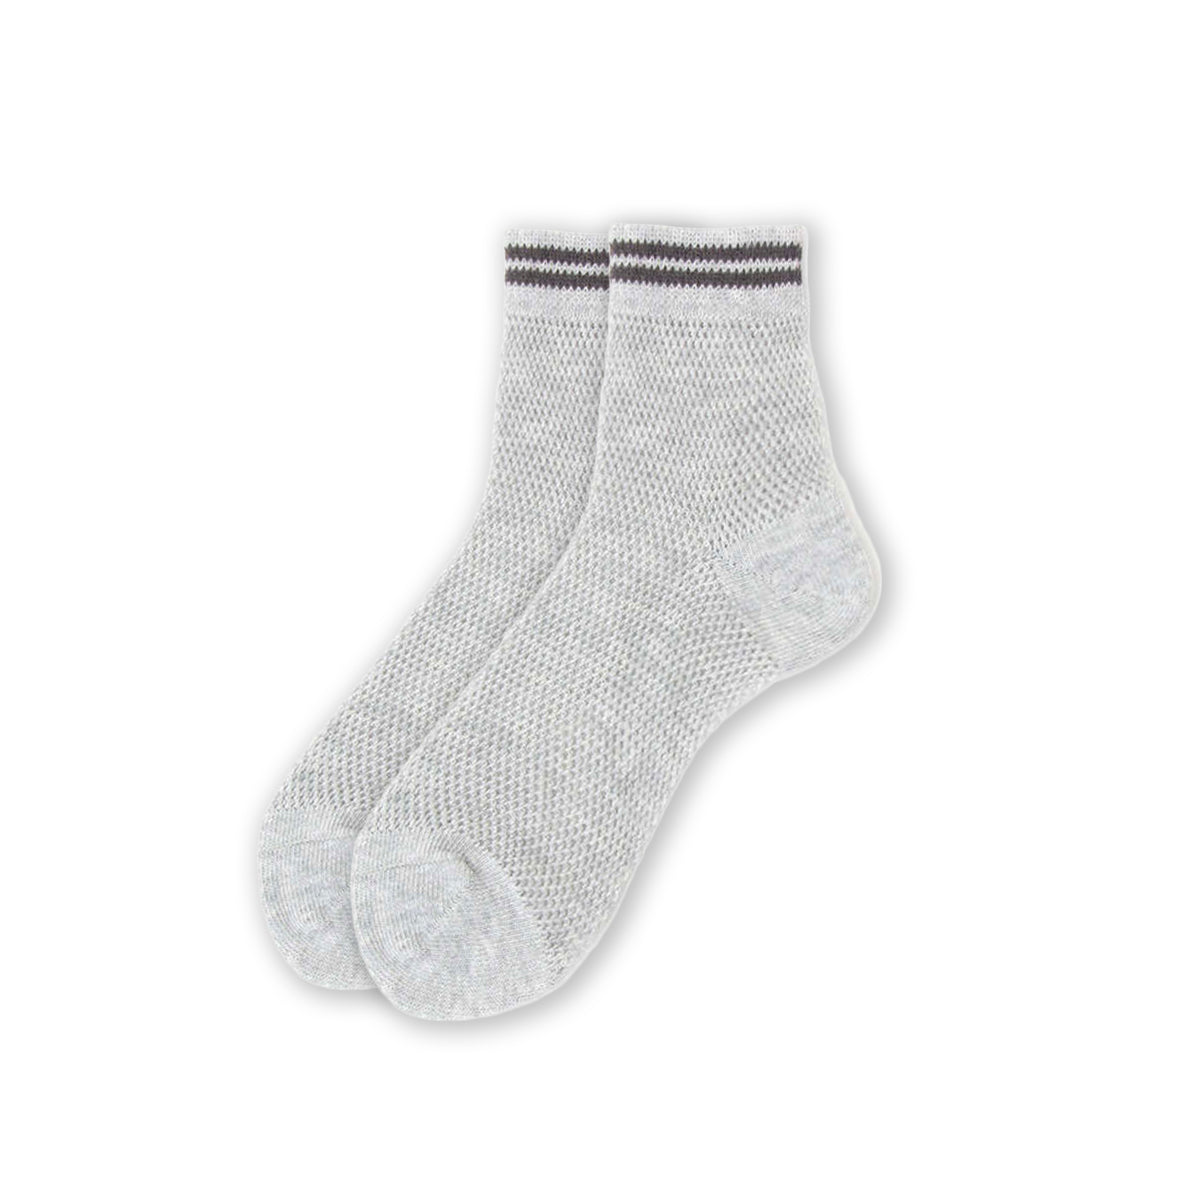 Drake General Store - XS Ladies Mesh Sneaker Socks - Grey